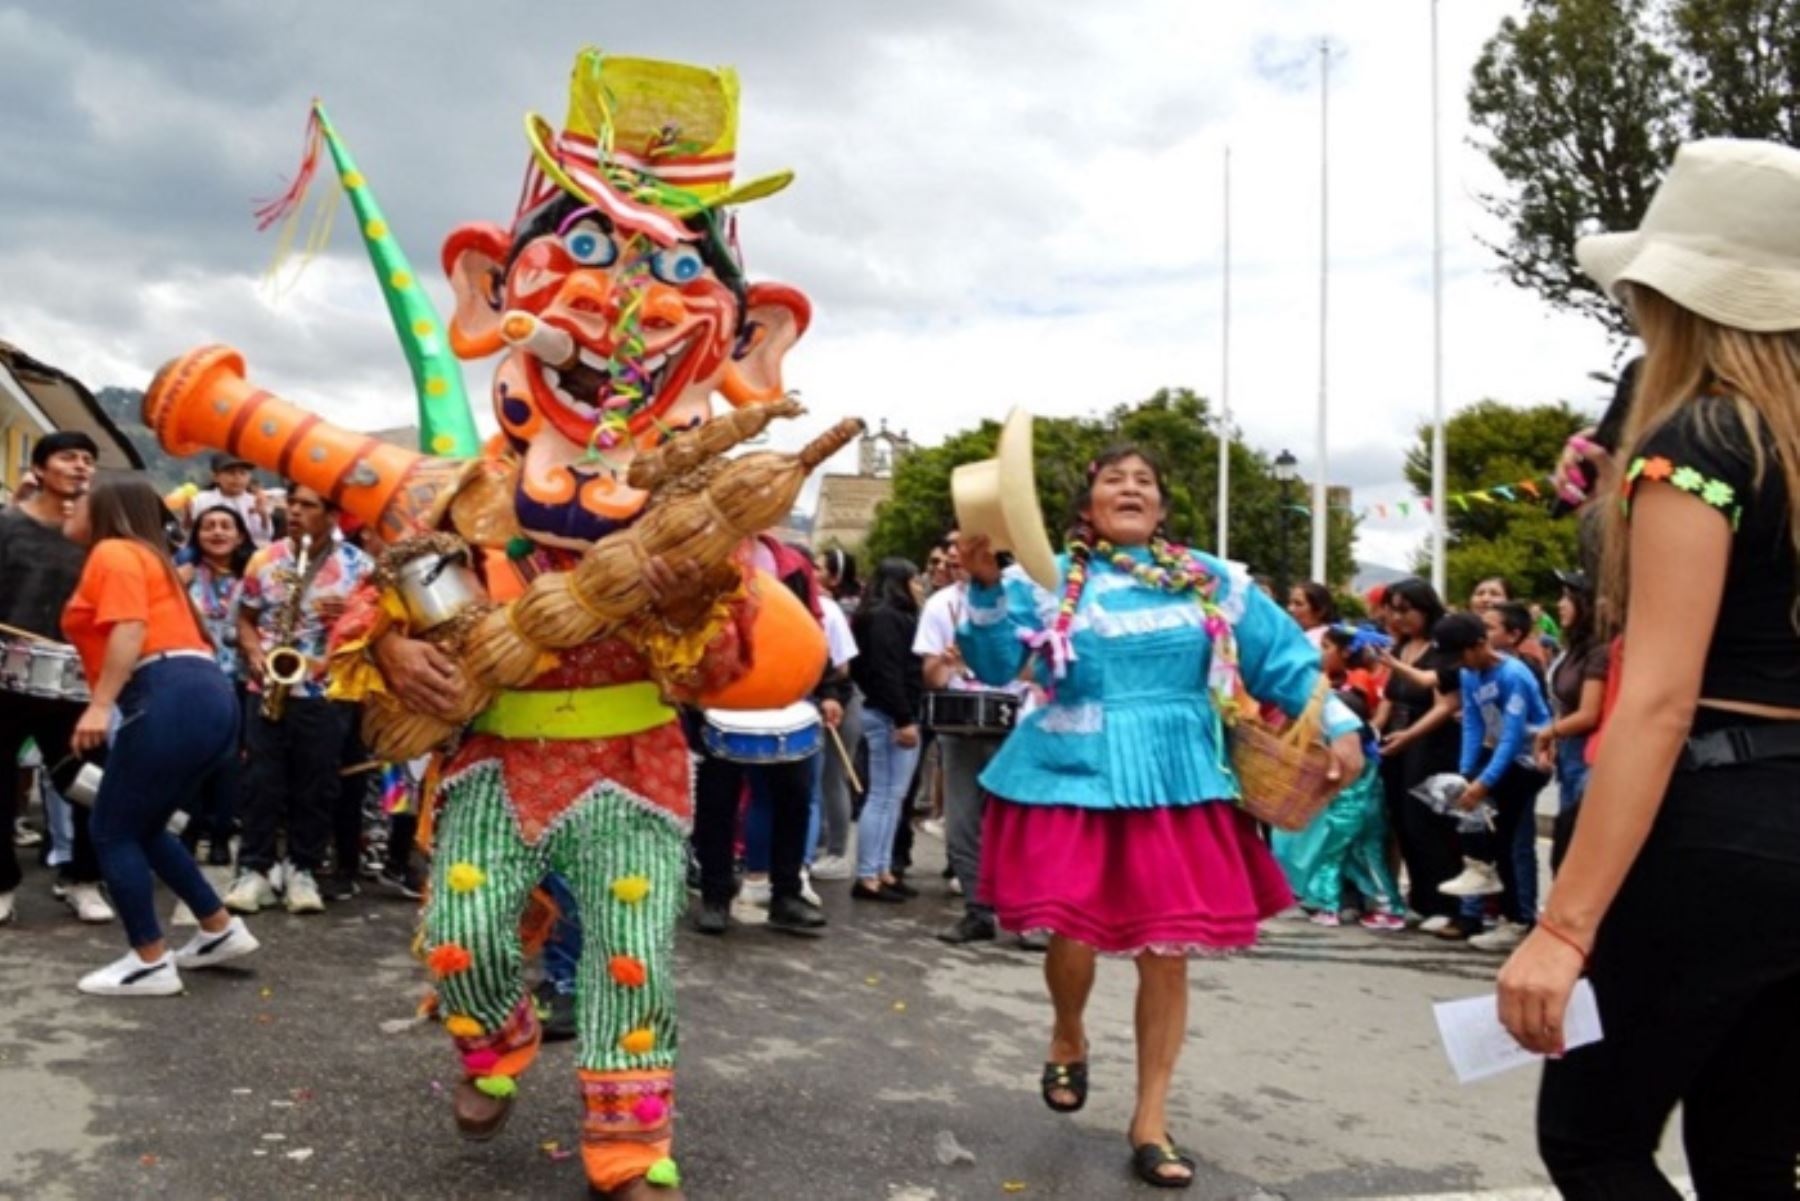 La celebración del carnaval cajamarquino reúne un conjunto de elementos primordiales que configuran su genuino festejo costumbrista, fragoroso en su desarrollo y pletórico de algarabía y colorido que fortalecen la identidad regional de la “Capital del carnaval peruano”.